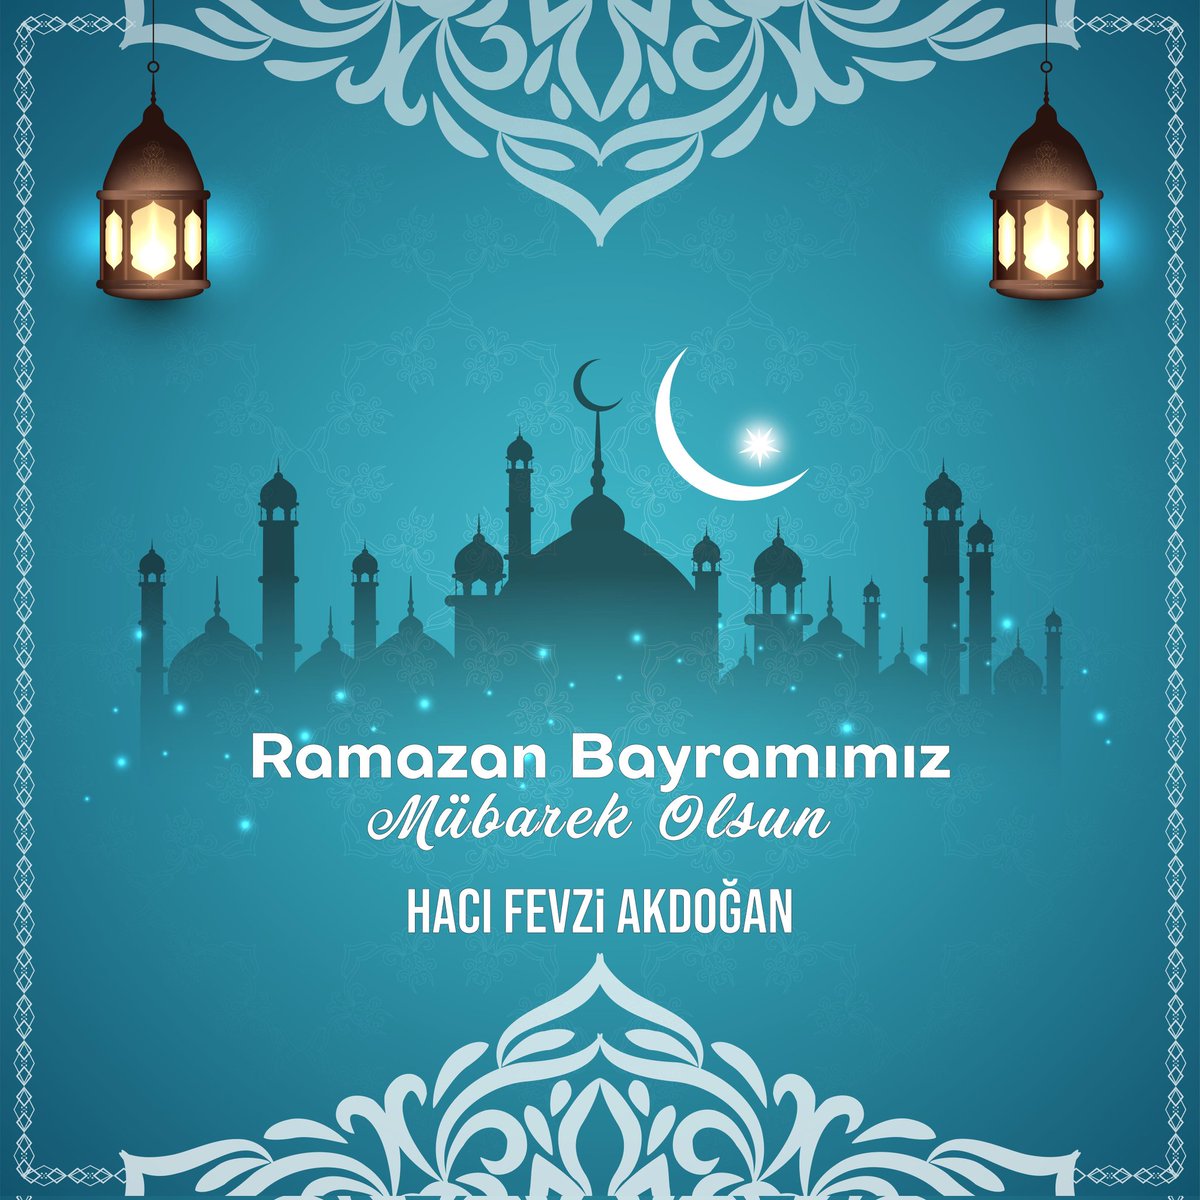 Mübarek Ramazan Bayramı’nın ülkemize, milletimize ve tüm İslâm Alemi’ne sağlık, huzur ve esenlikler getirmesini Cenab-ı Allah’tan niyaz ederim. Ramazan Bayramımız mübarek olsun.